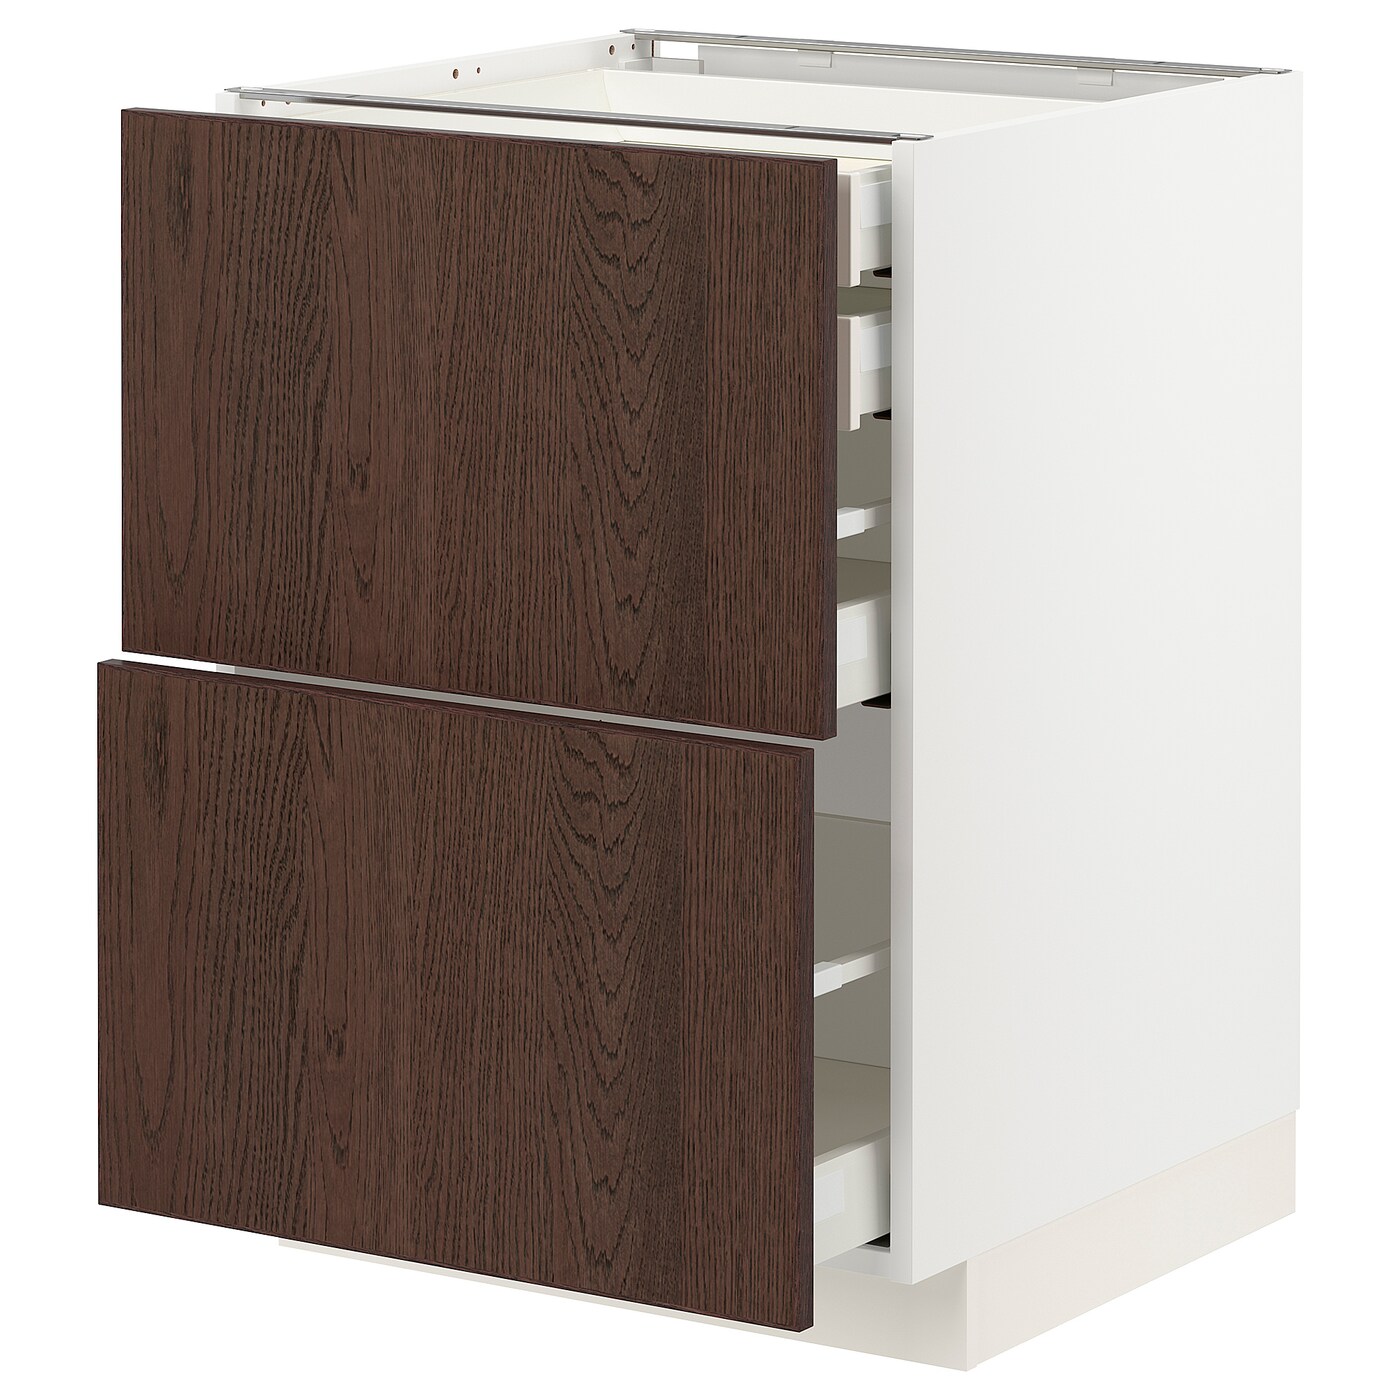 Напольный кухонный шкаф  - IKEA METOD MAXIMERA, 88x61,6x60см, белый/коричневый, МЕТОД МАКСИМЕРА ИКЕА